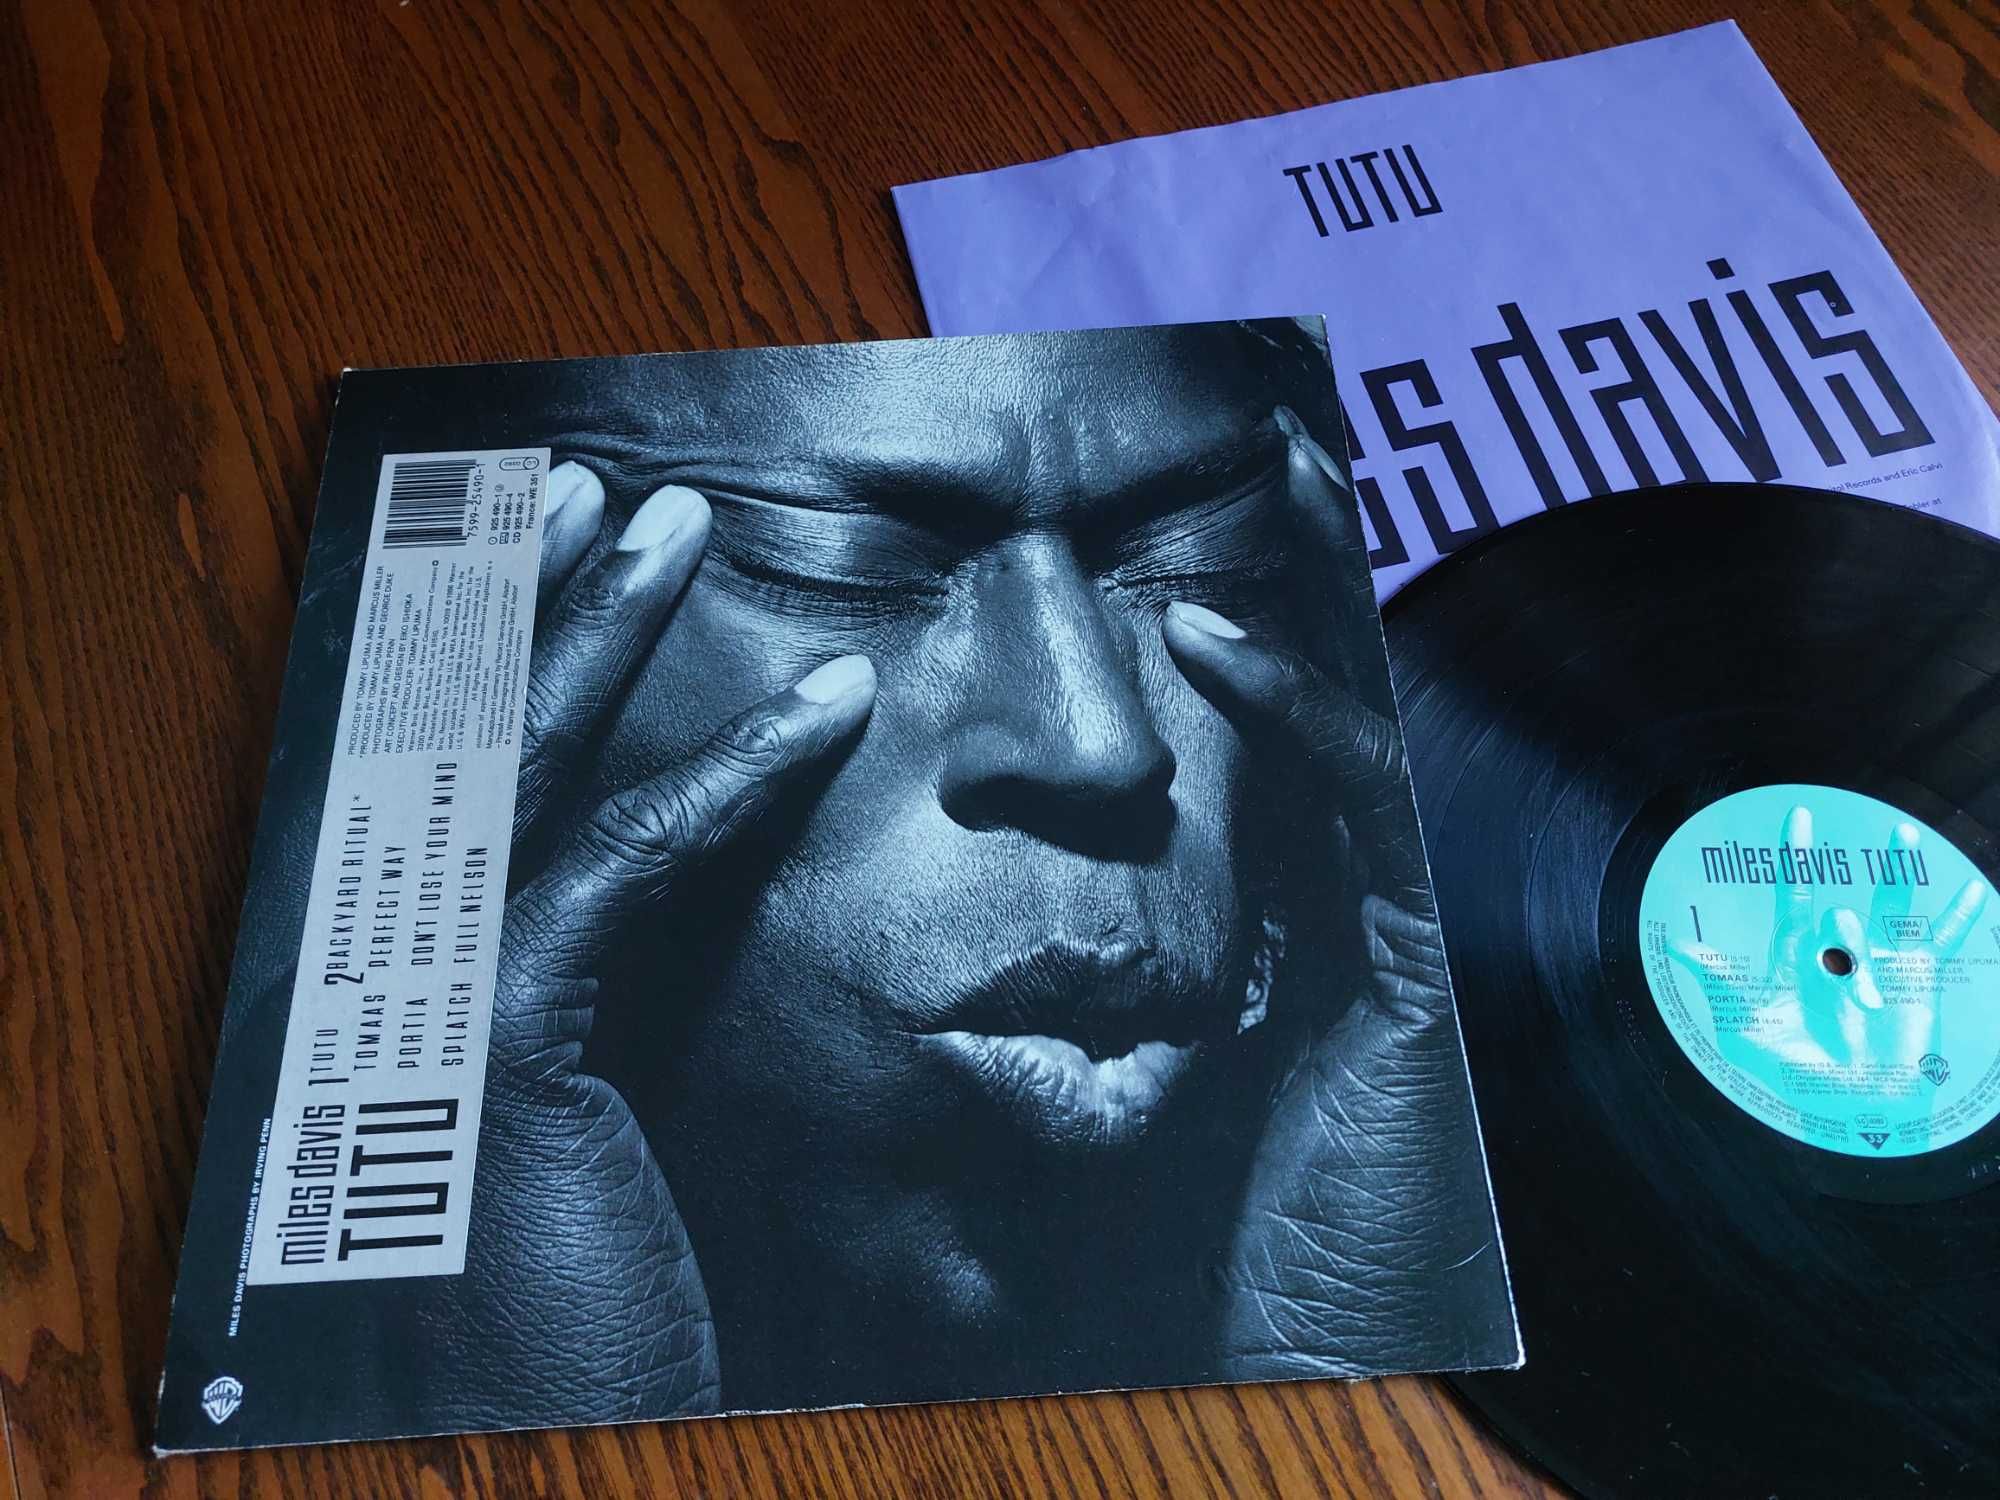 Miles Davis – Tutu lp 5637 rezerwacja